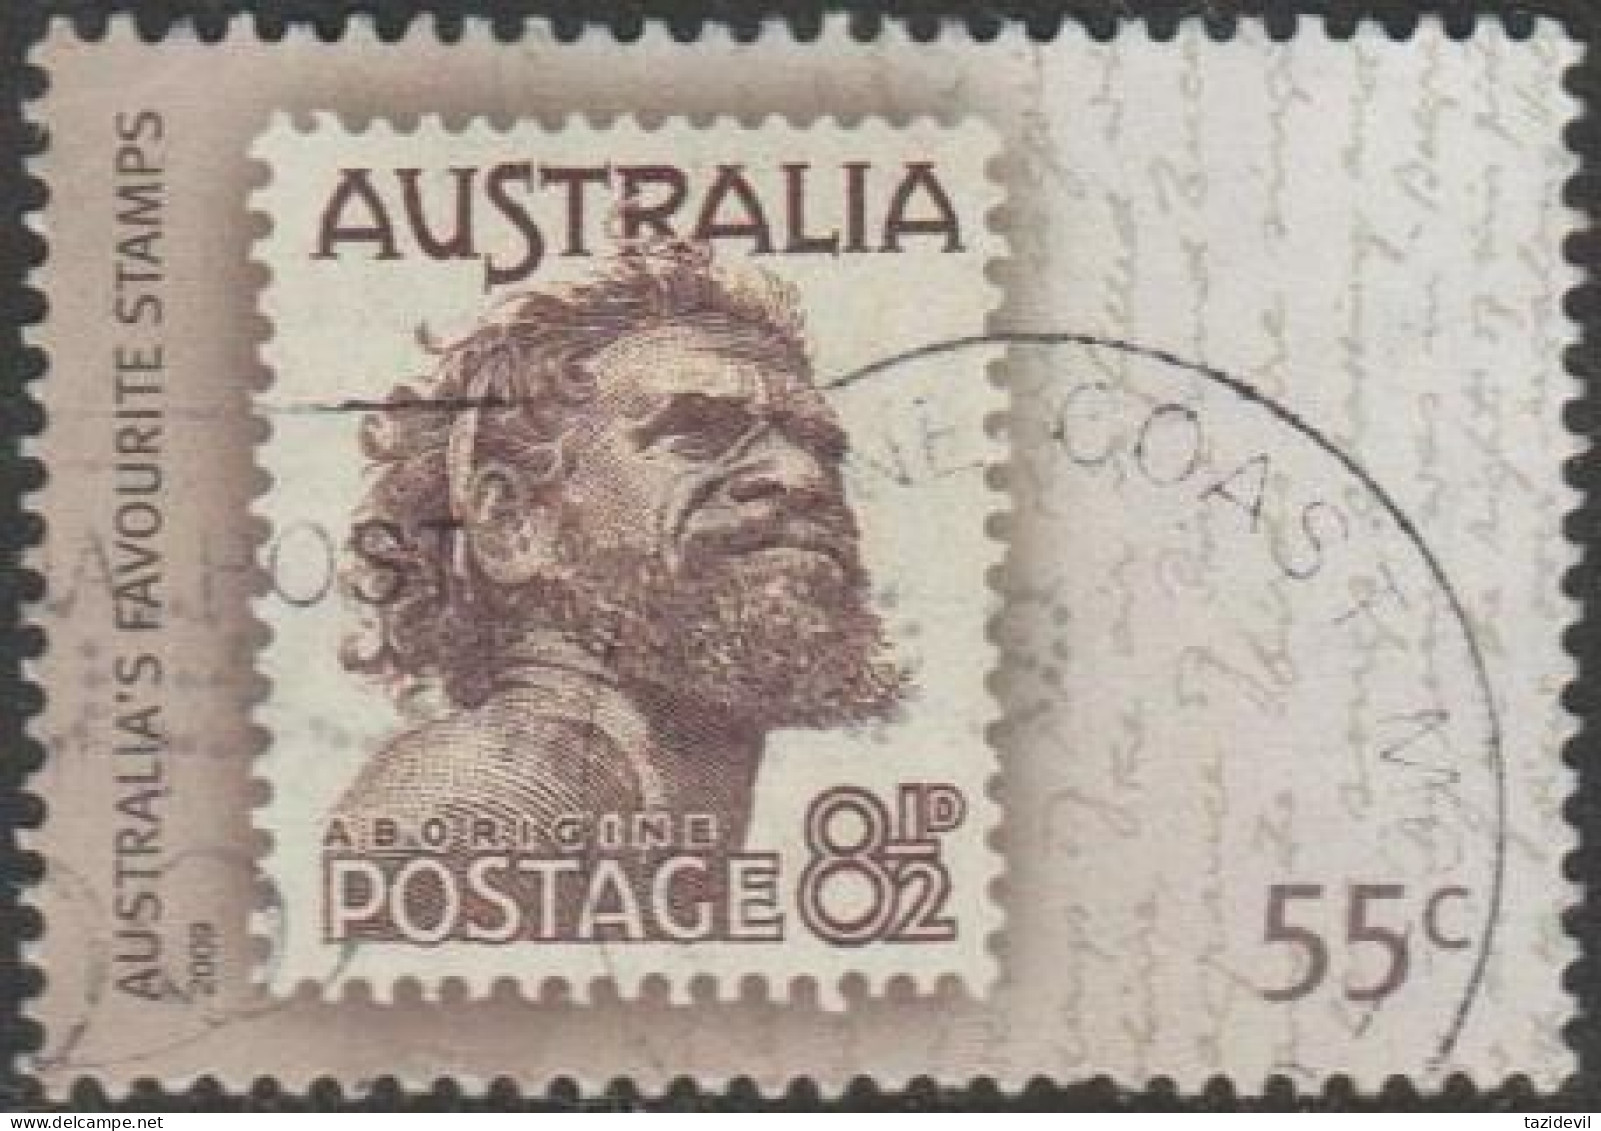 AUSTRALIA - USED - 2009 55c Australia's Favourite Stamps - 8½d Aboriginal - Usados